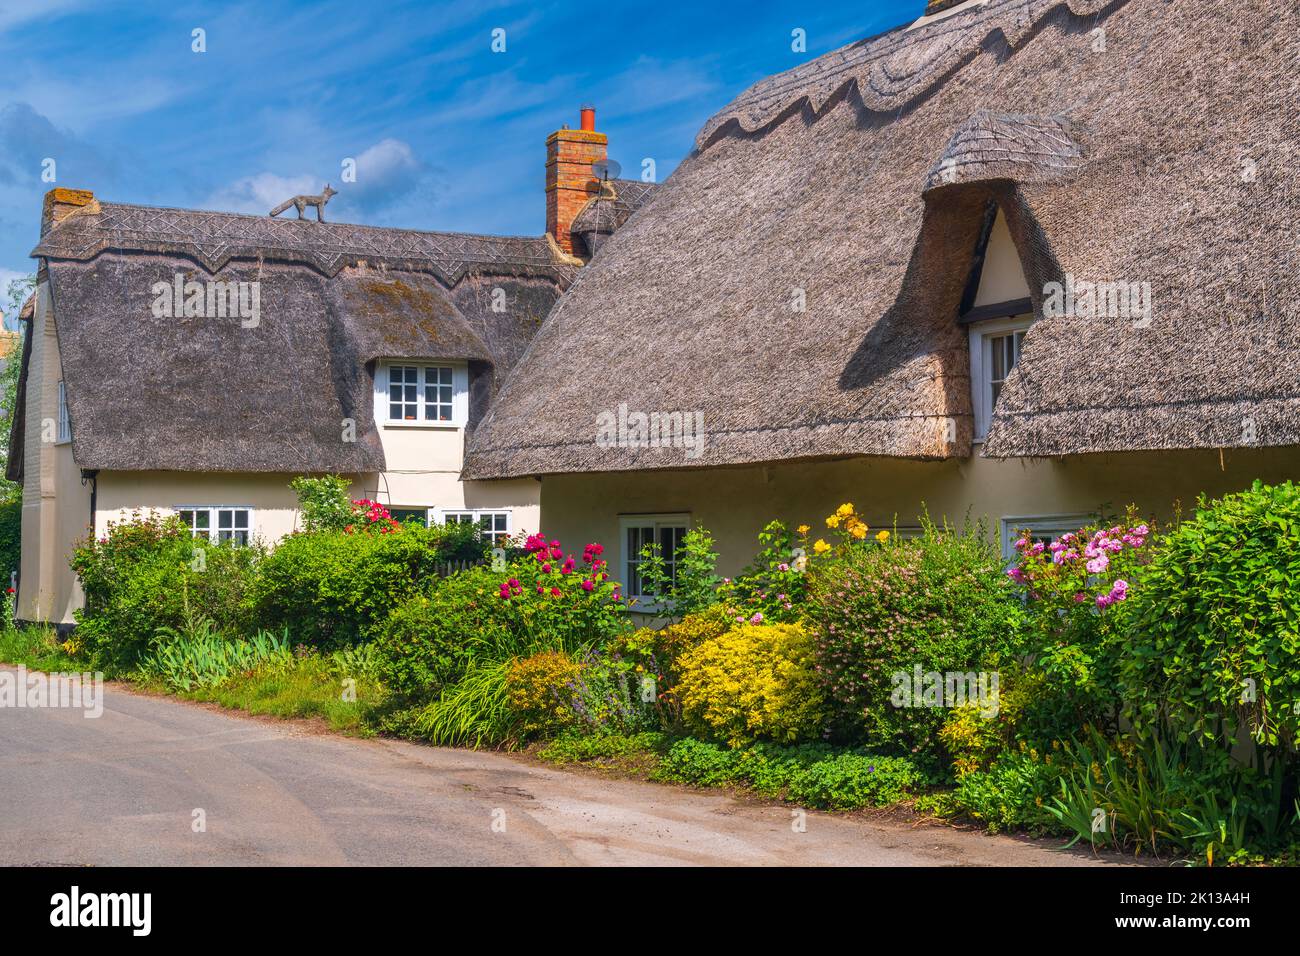 Maison traditionnelle de chaume, Wennington, Cambridgeshire, Angleterre, Royaume-Uni, Europe Banque D'Images